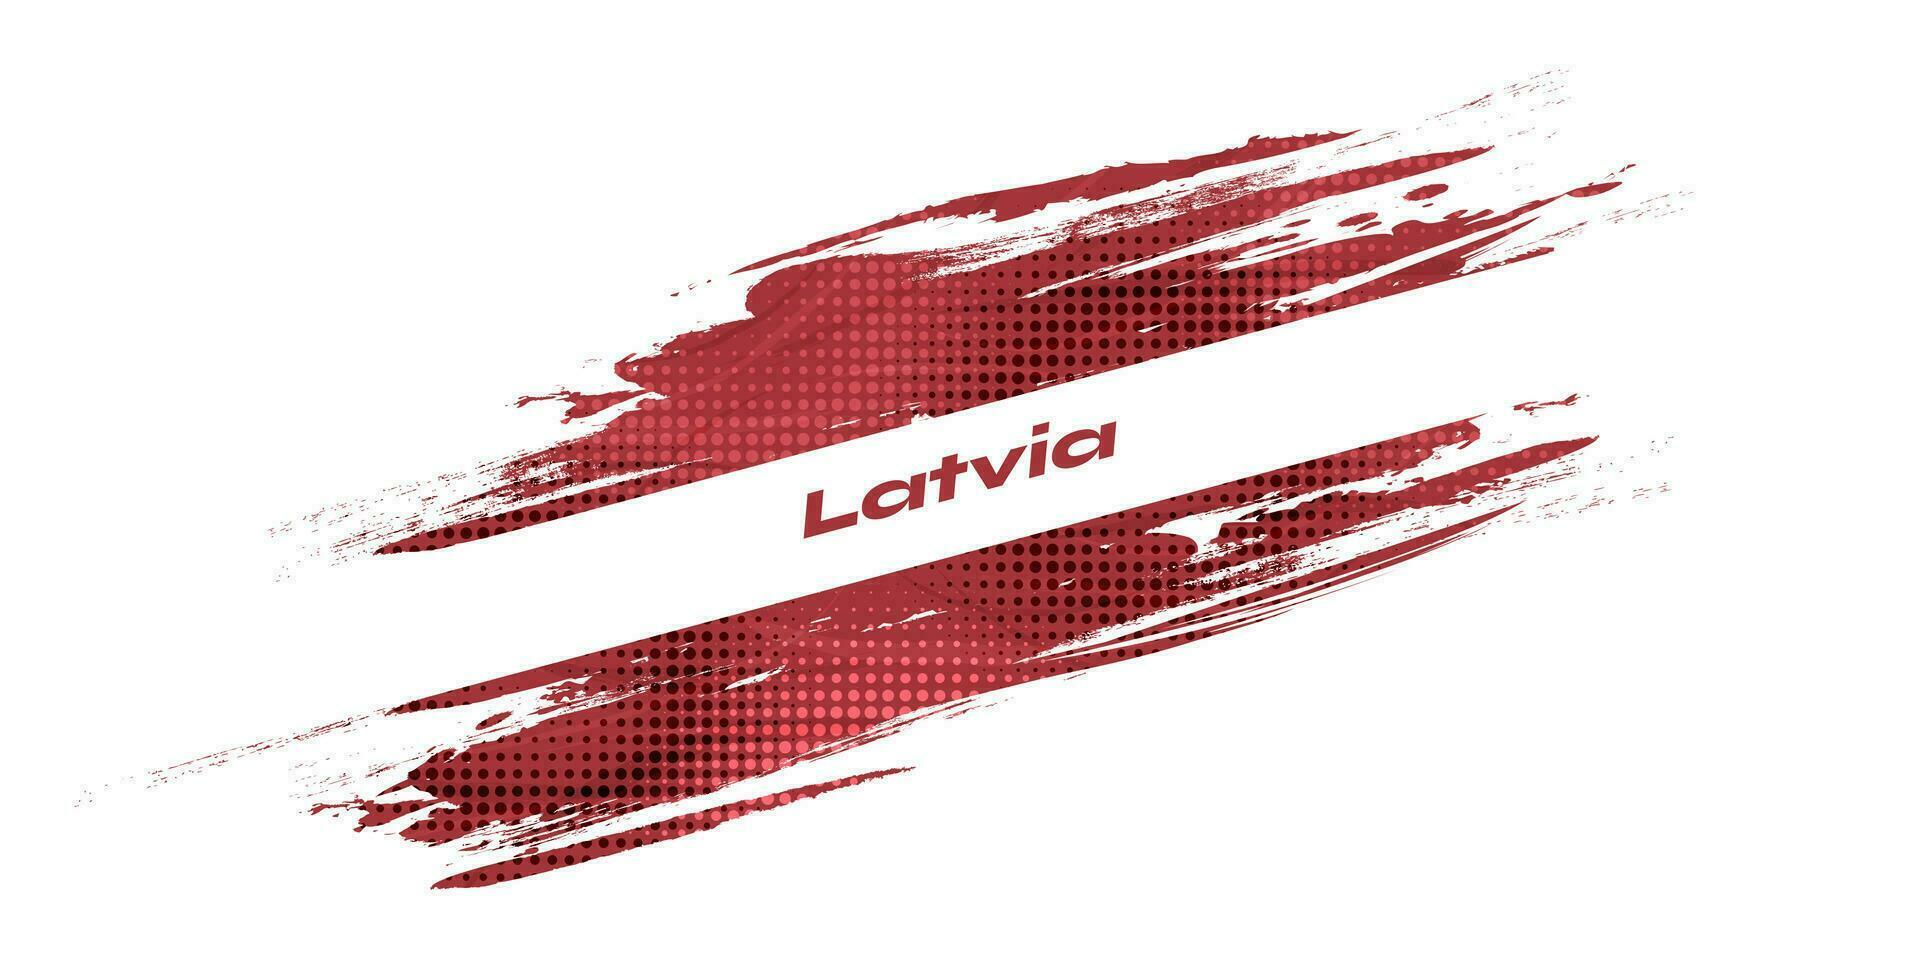 Flag of Latvia with Brush Style. National Republic of Latvia flag on White Background vector